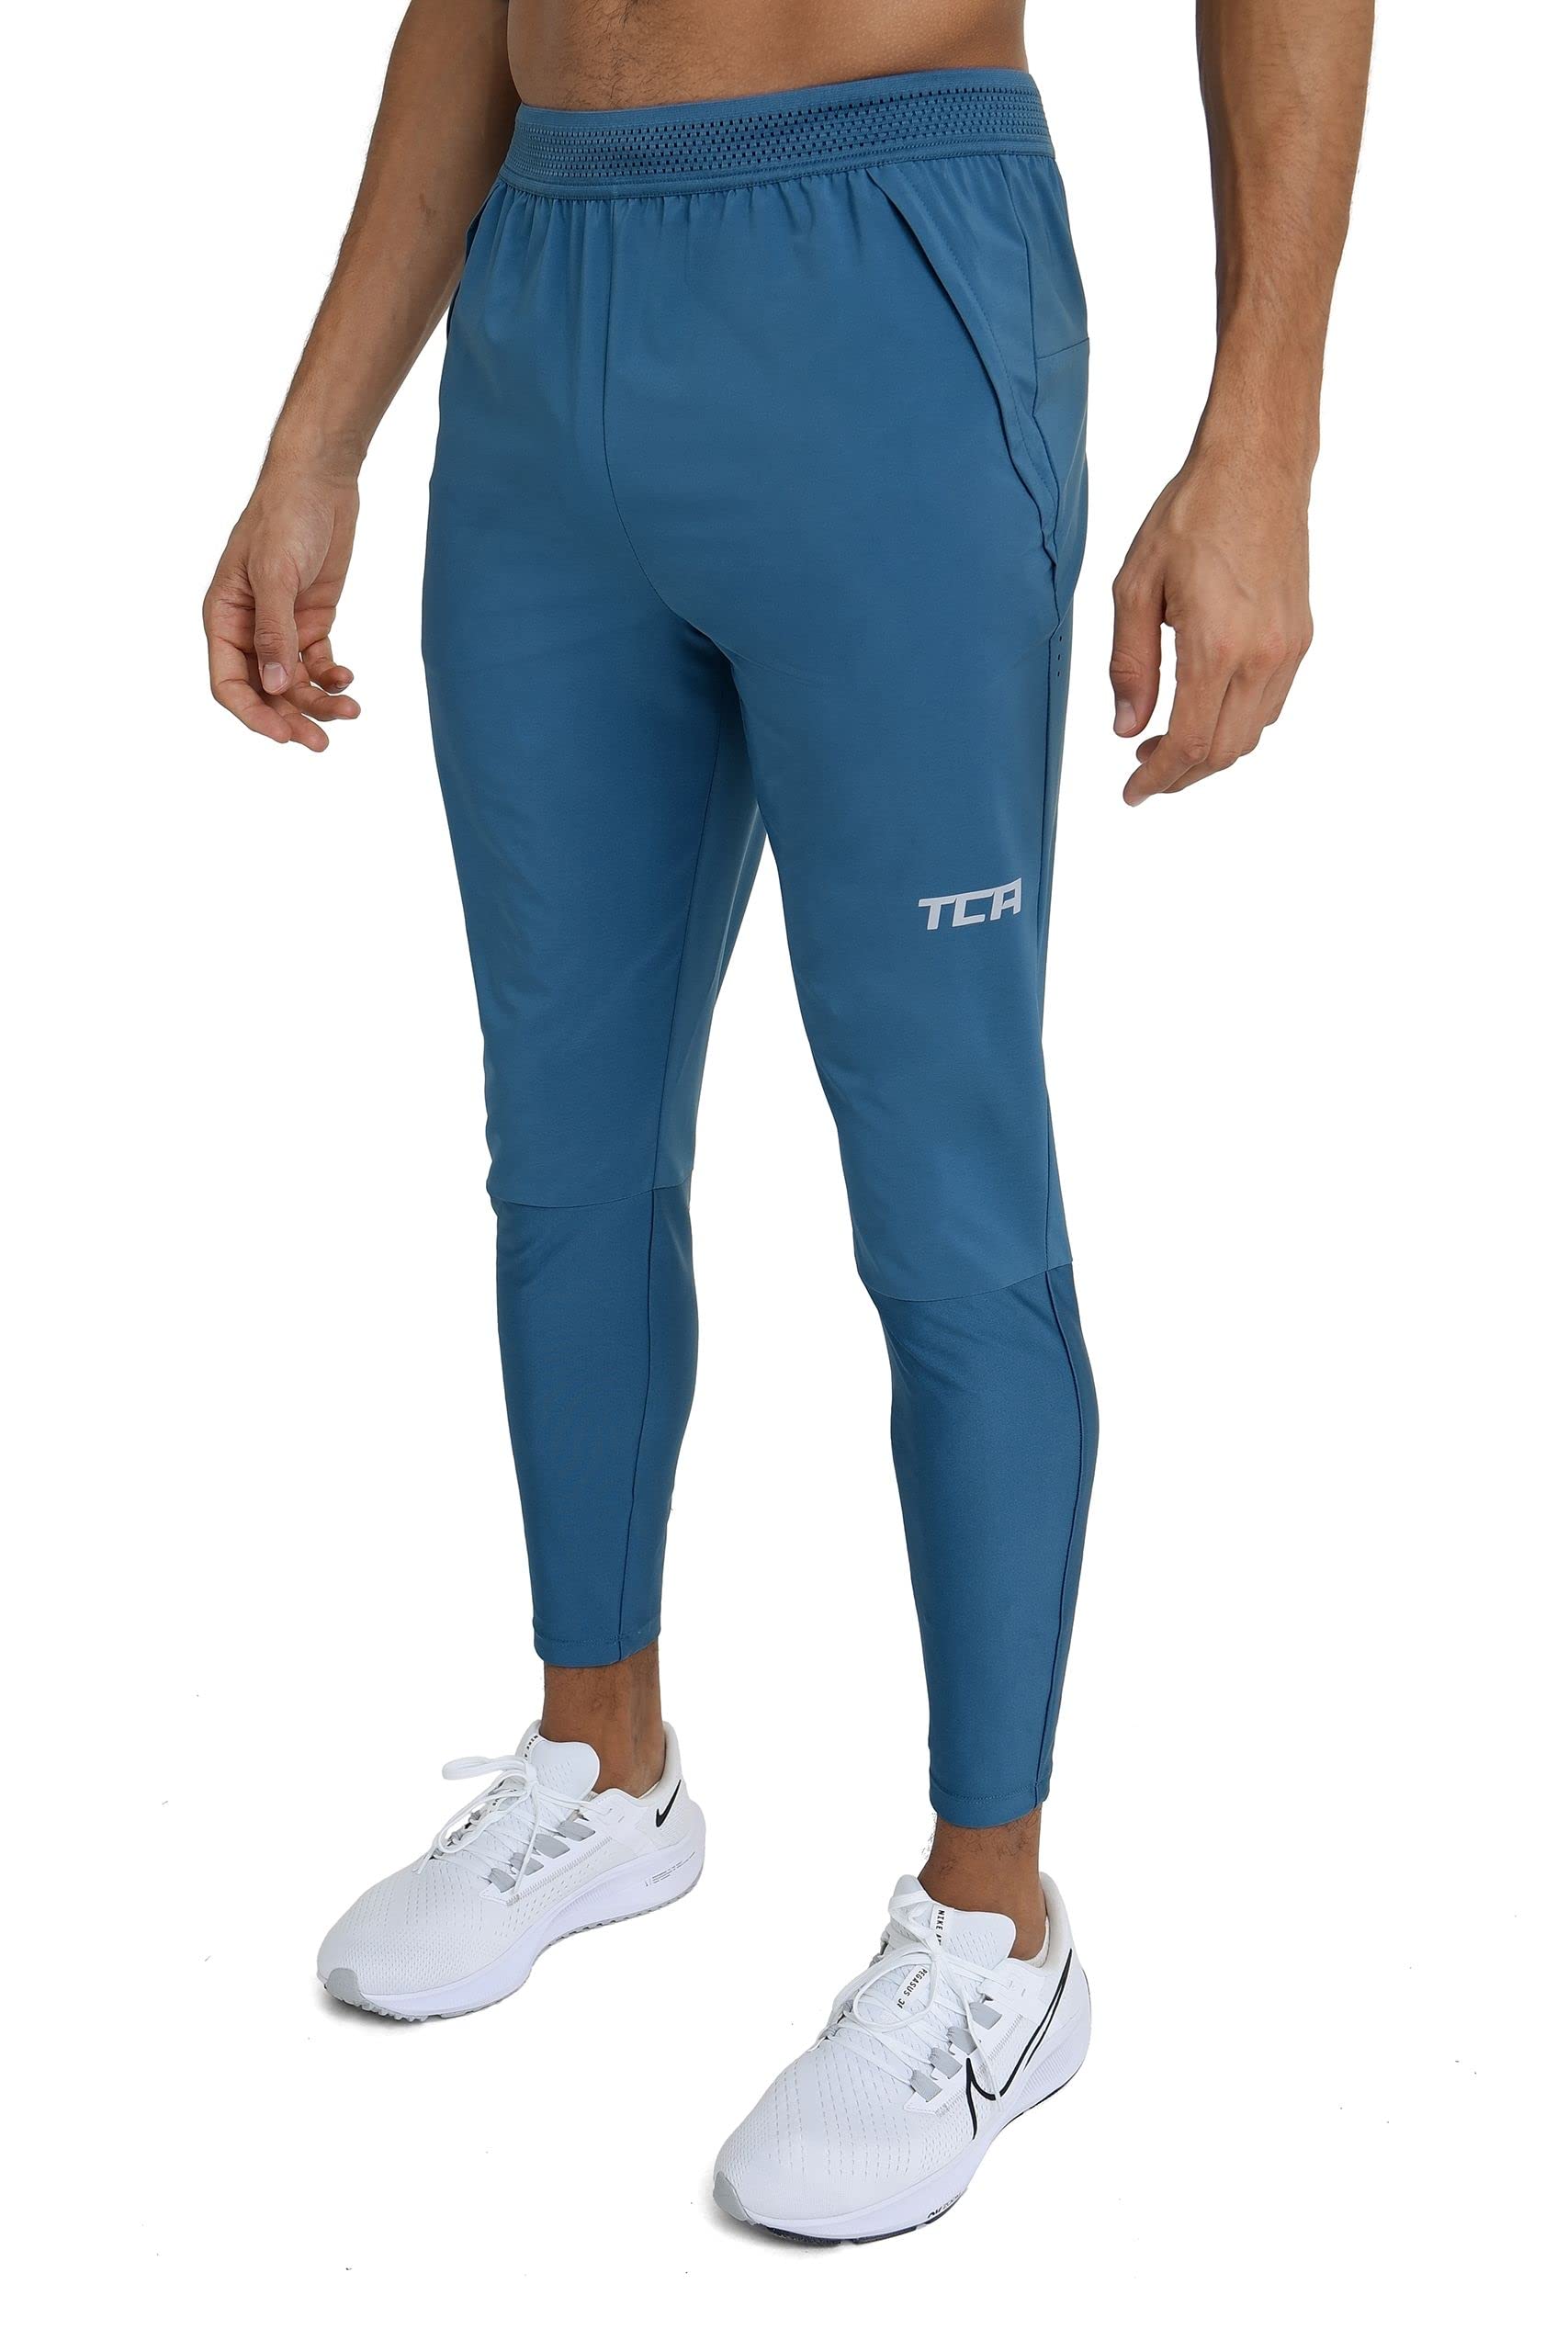 TCA Herren Elite Leichte Jogginghose mit Reißverschlusstaschen - Blau, XL